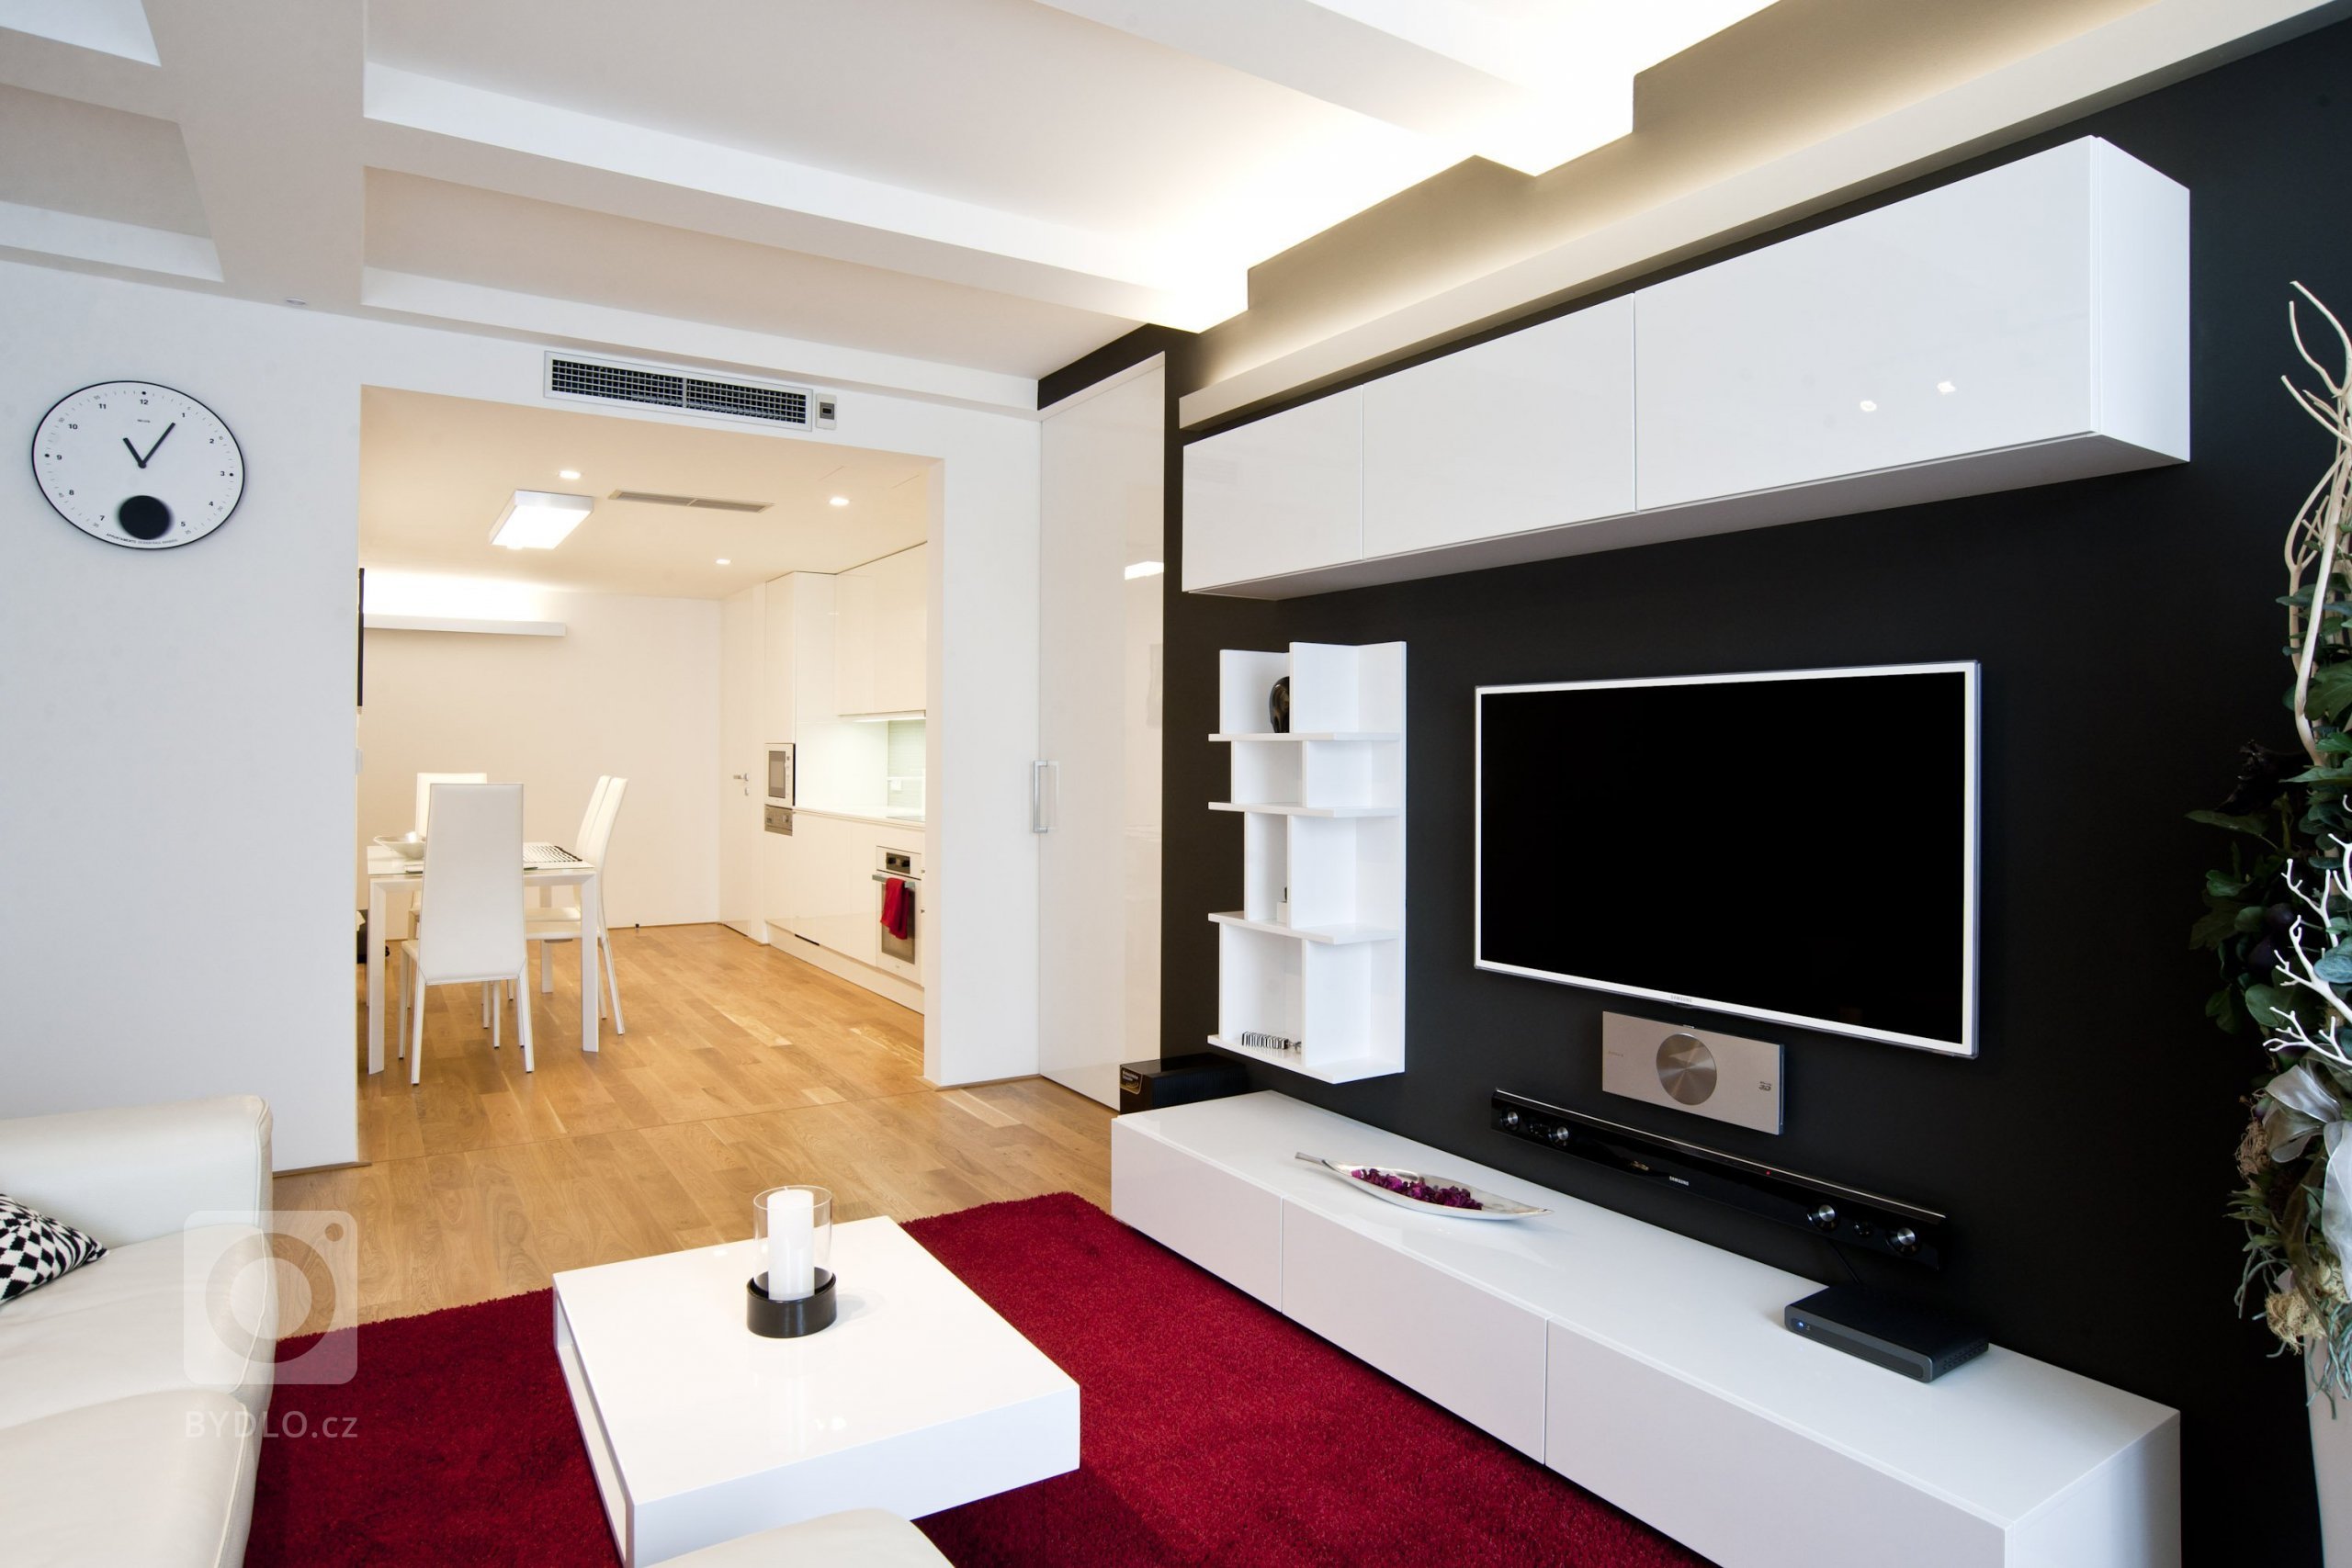 Interiérový design na vynikající adrese. Tak lze vystihnout realizaci v&nbsp;luxusním pražském bytě s&nbsp;atraktivním nábytkem navrženým na míru.&nbsp…